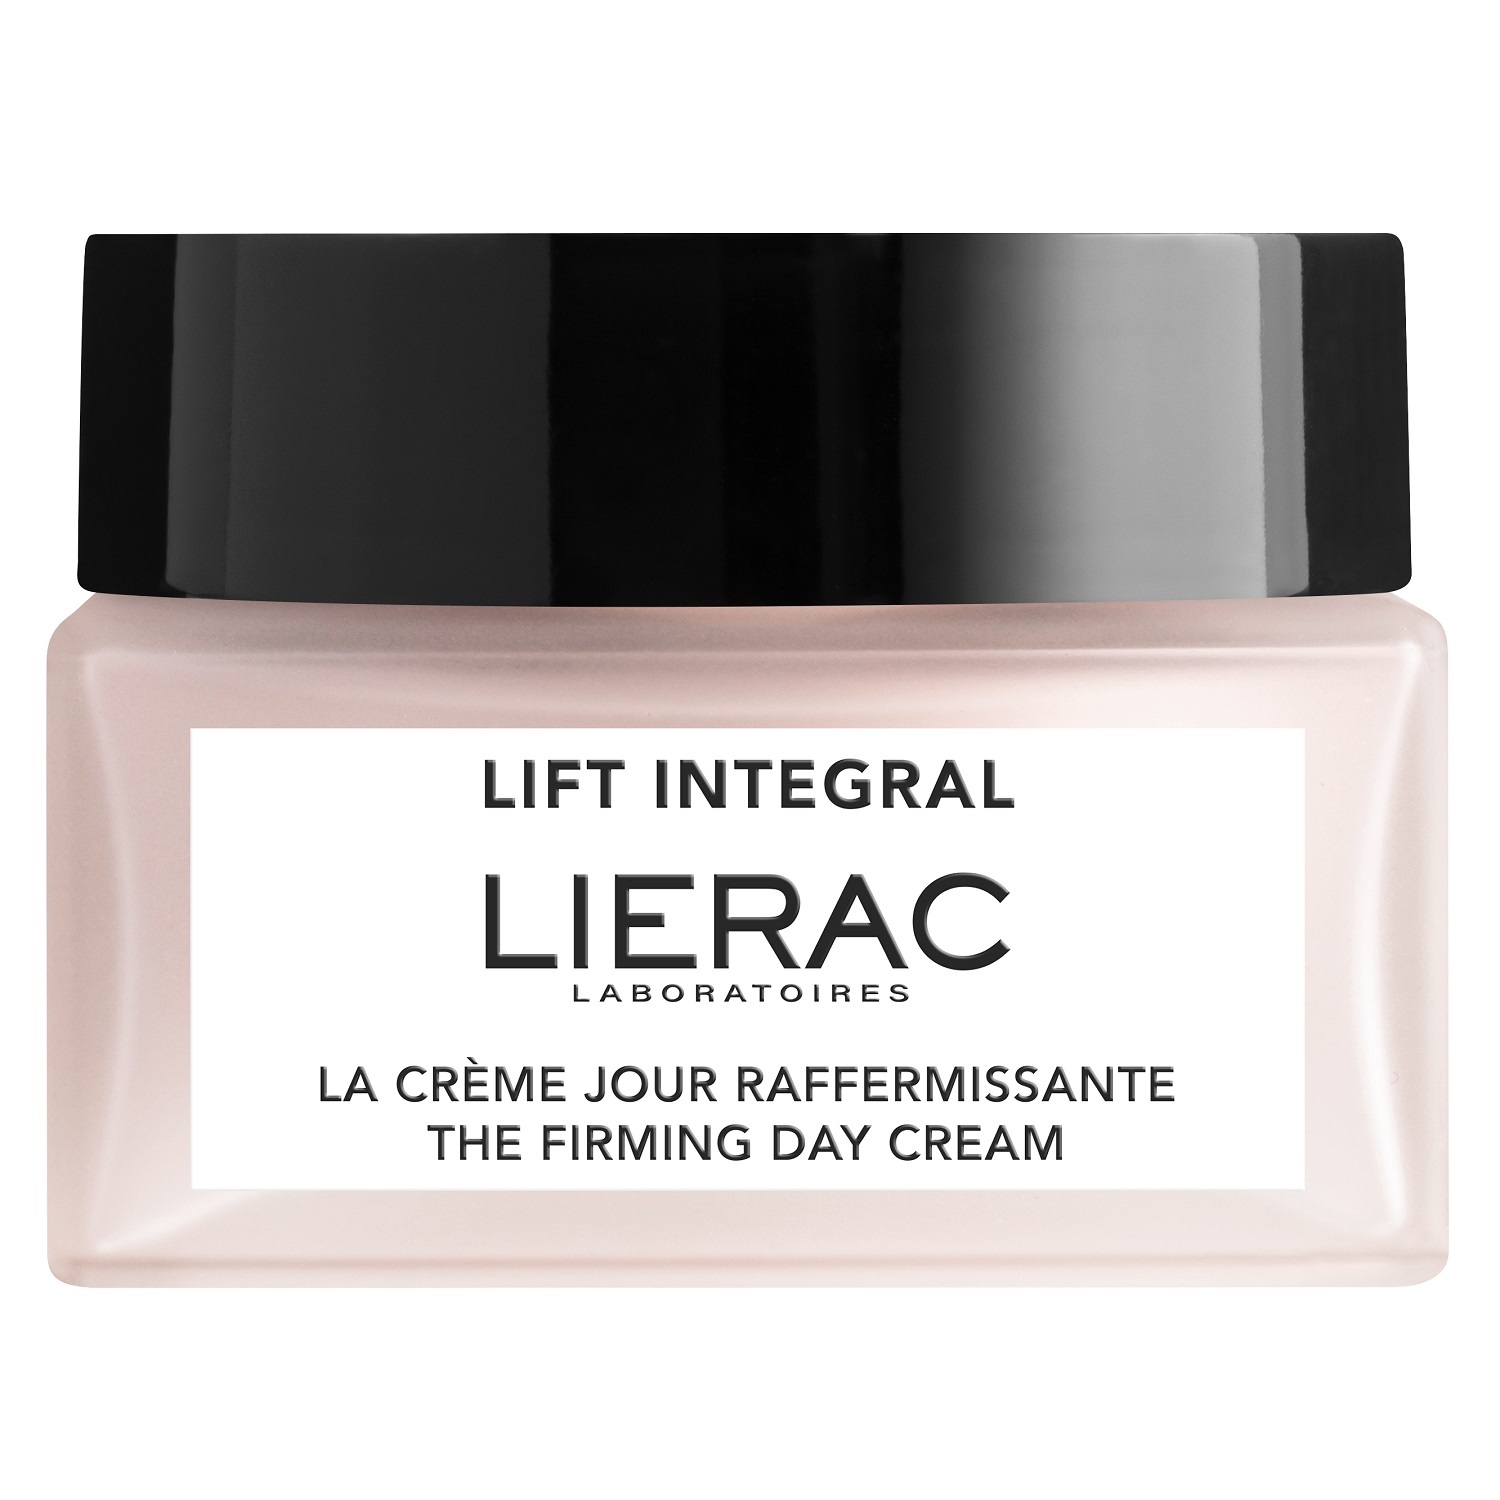 Lierac Укрепляющий дневной крем-лифтинг для лица, 50 мл (Lierac, Lift Integral)